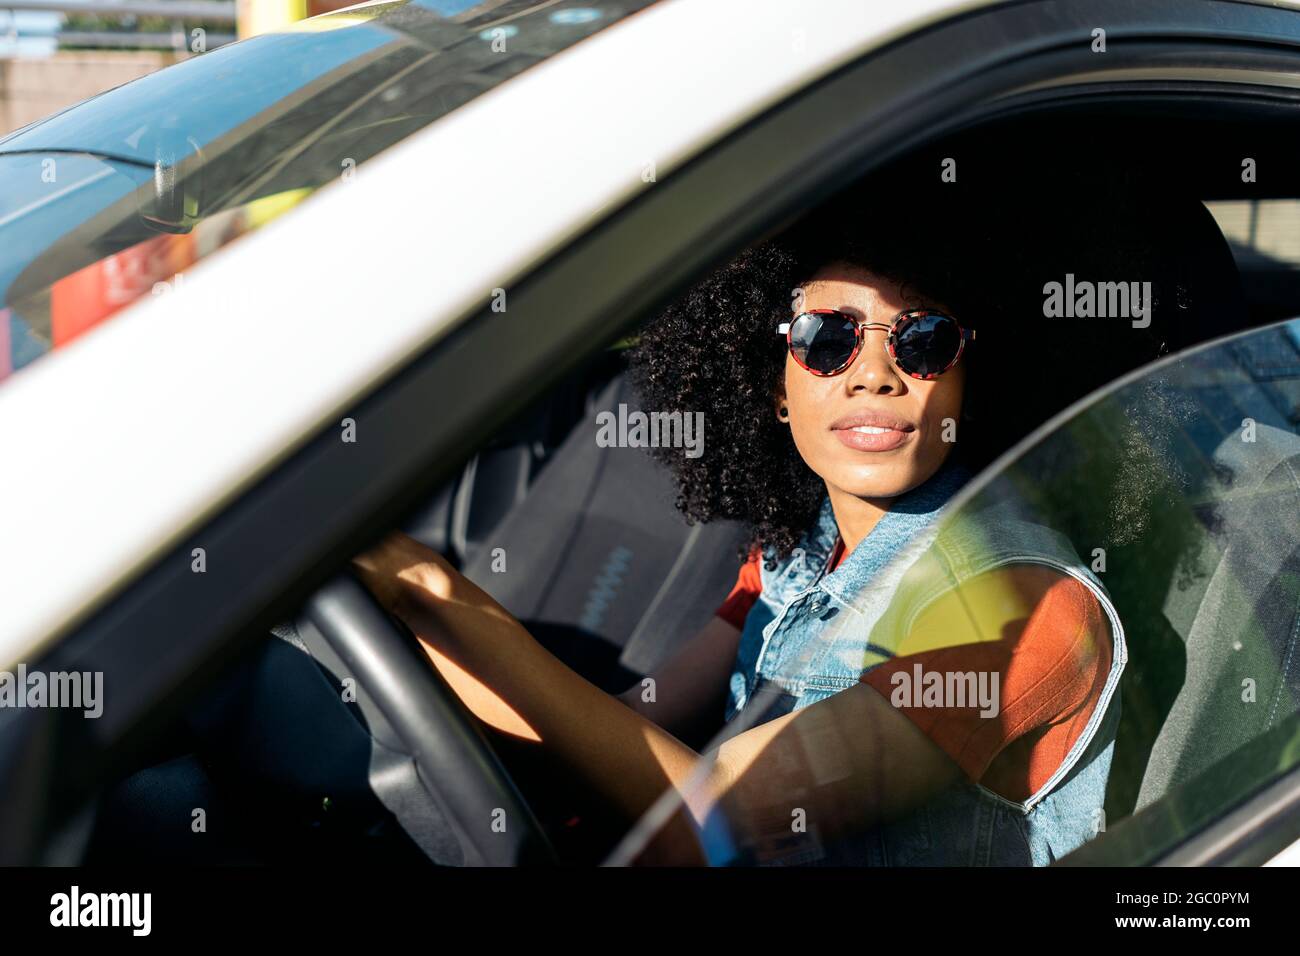 Coole Frau mit Afro-Haaren, die ihr Auto fährt und die Kamera anschaut. Sie trägt eine Sonnenbrille. Stockfoto